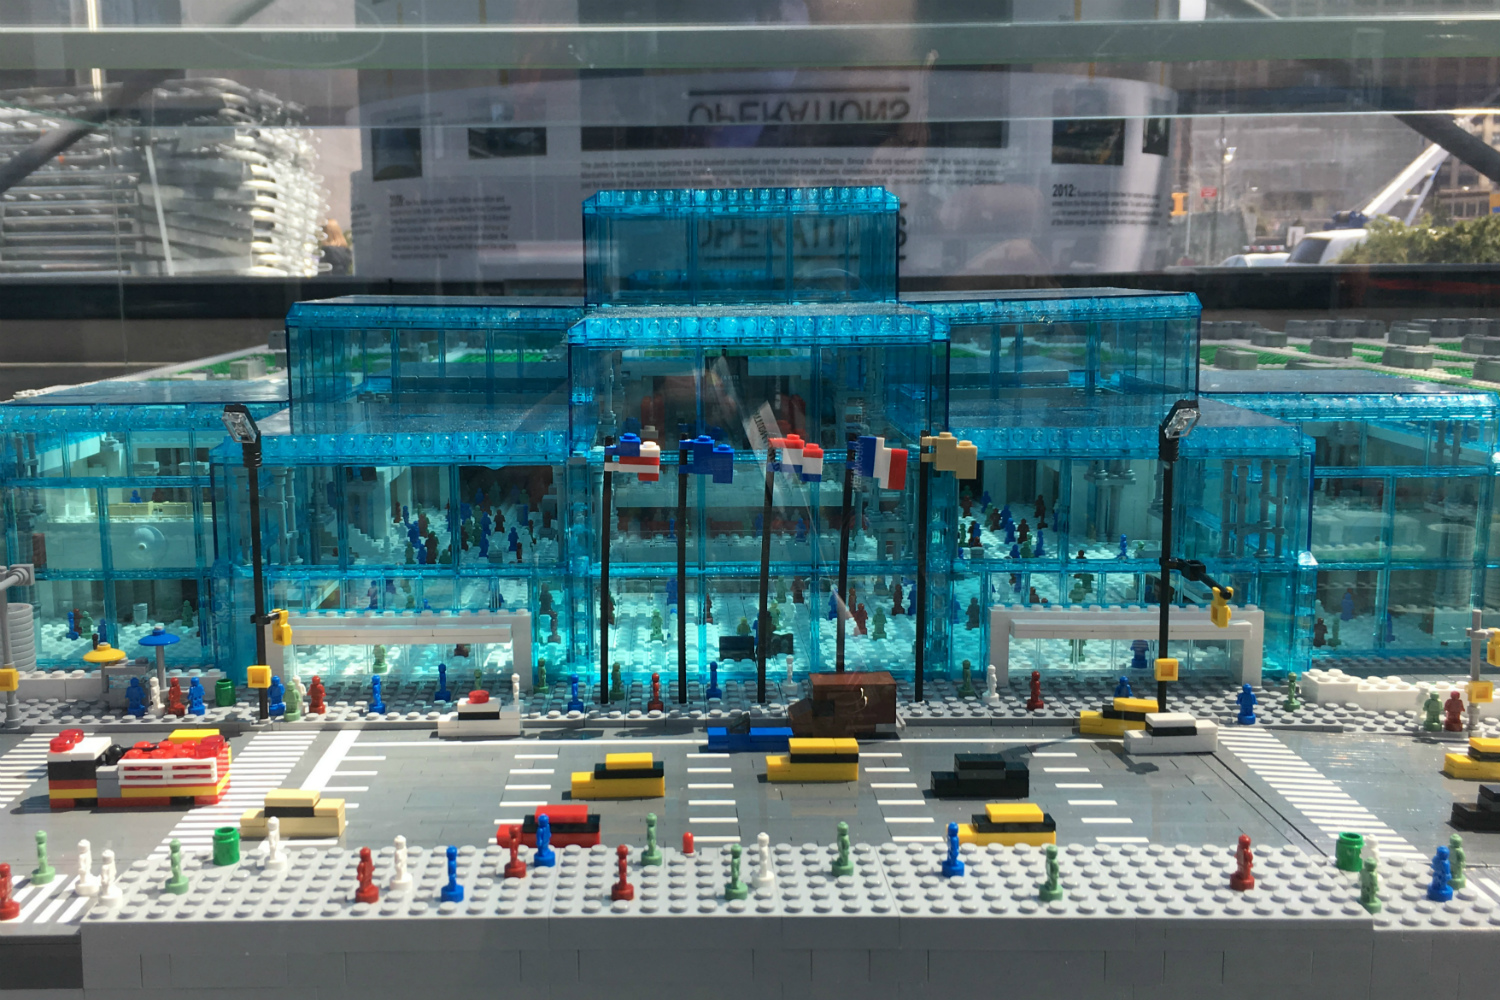 Lego Javits Center